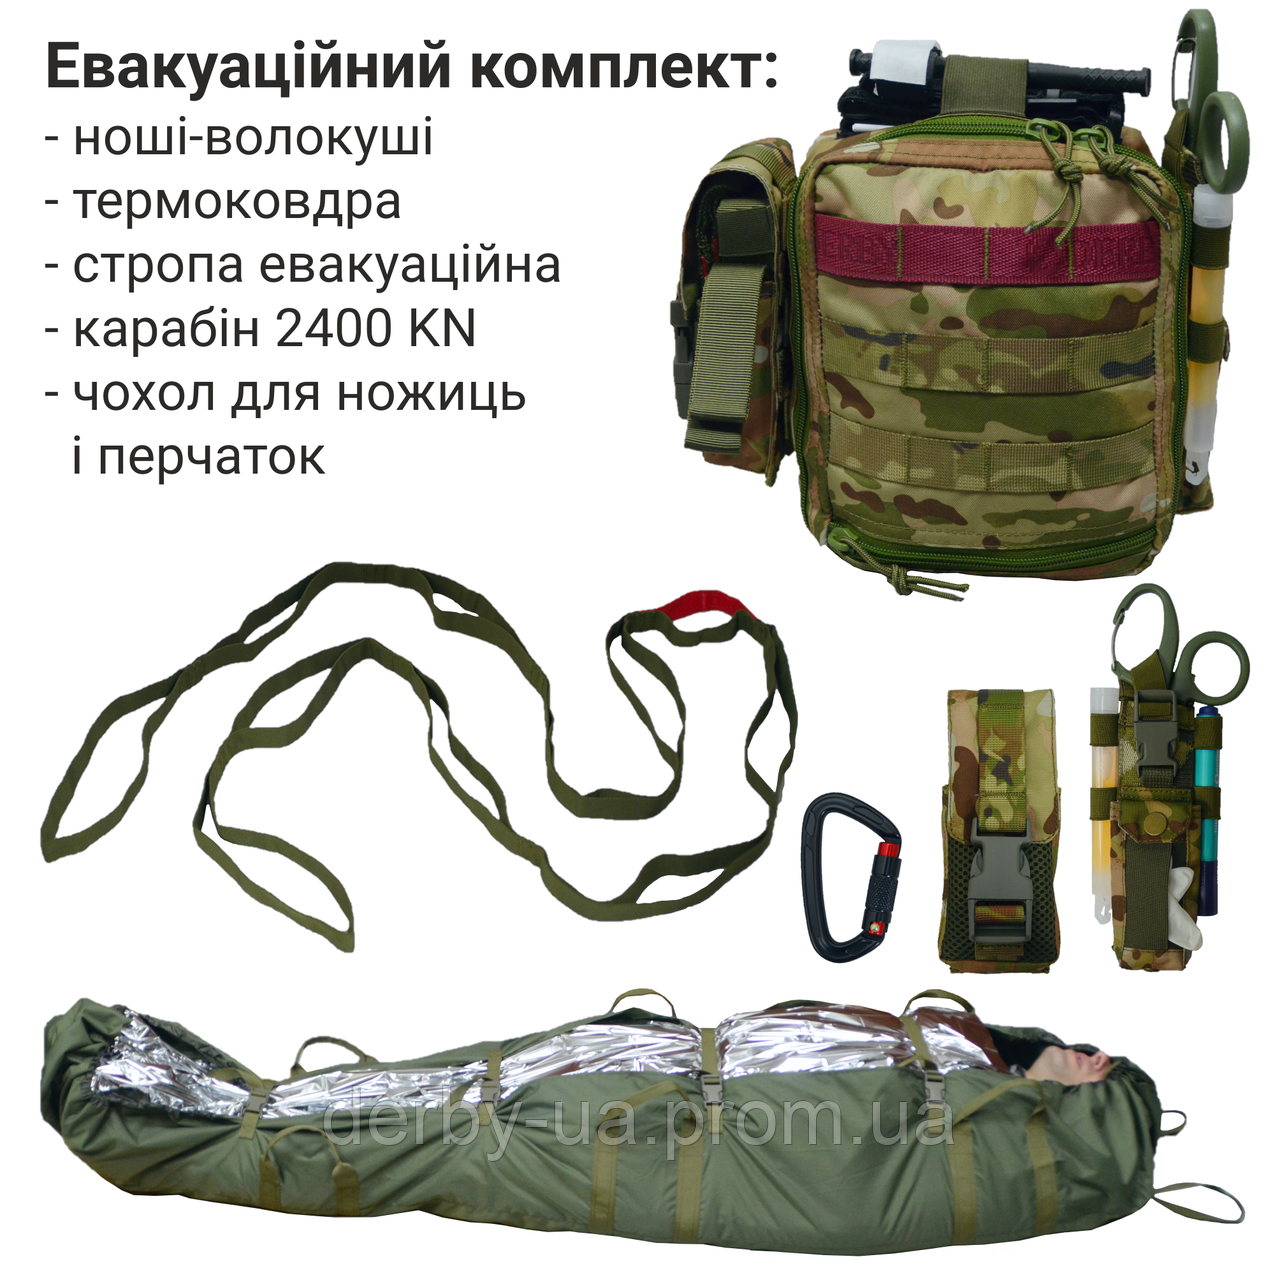 Тактичні ноші волокуши, евакуаційна стропа, чохол для ножиць DERBY Evac-HSX мультикам